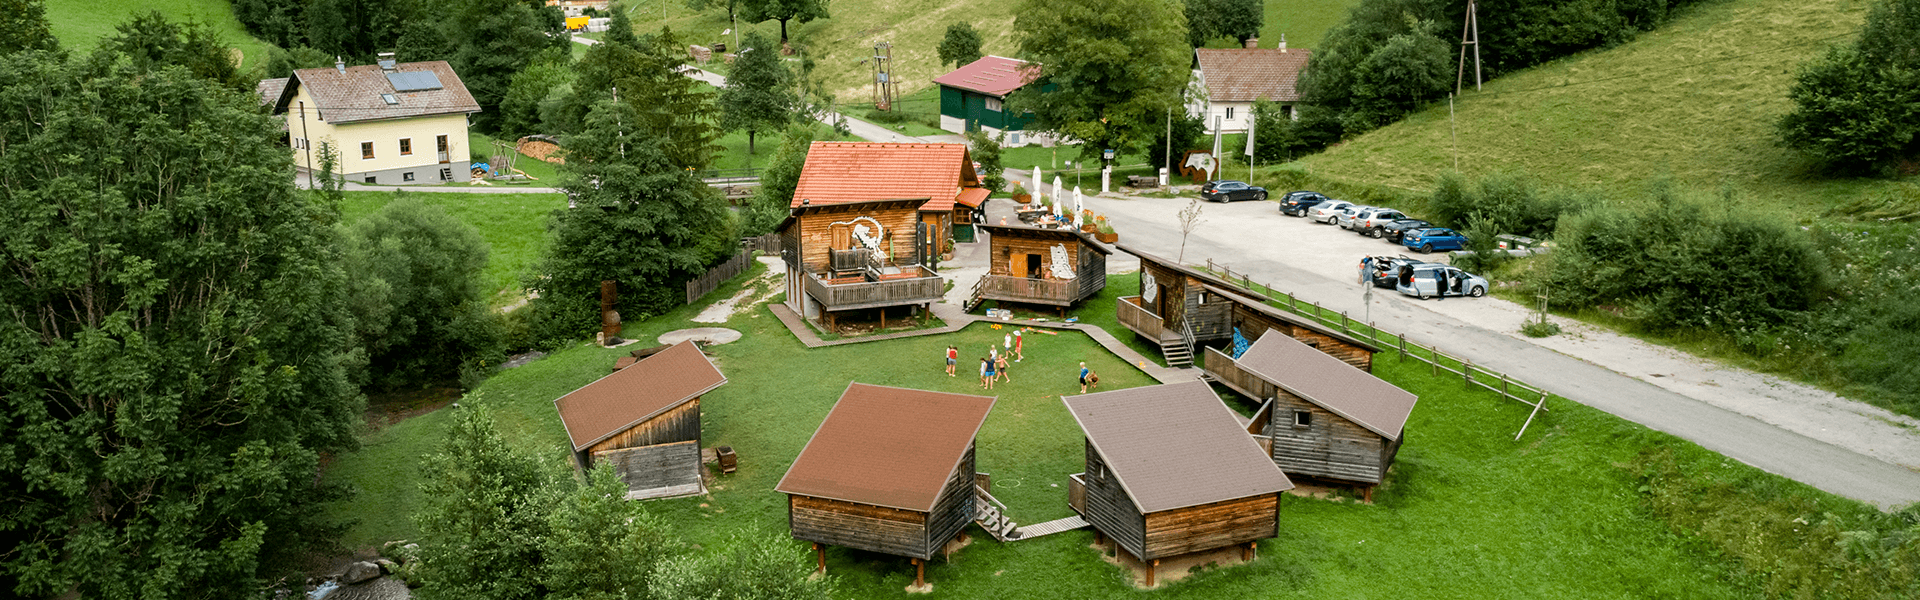 Stelzenhäuser im Erlebnisdorf Sulzbichl